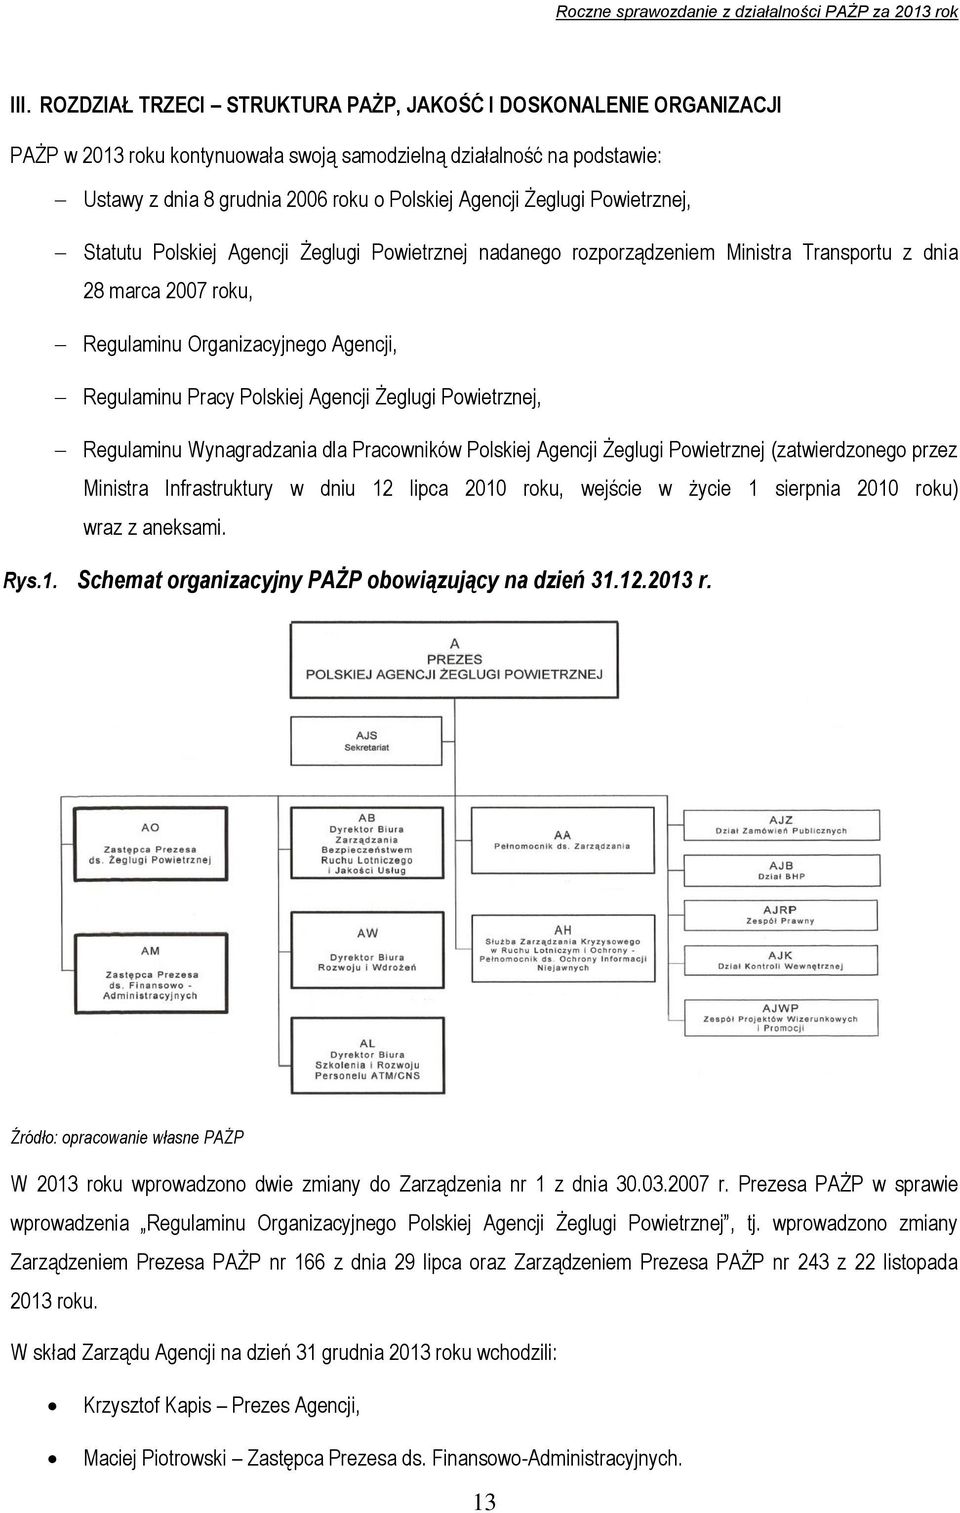 Agencji Żeglugi Powietrznej, Regulaminu Wynagradzania dla Pracowników Polskiej Agencji Żeglugi Powietrznej (zatwierdzonego przez Ministra Infrastruktury w dniu 12 lipca 2010 roku, wejście w życie 1